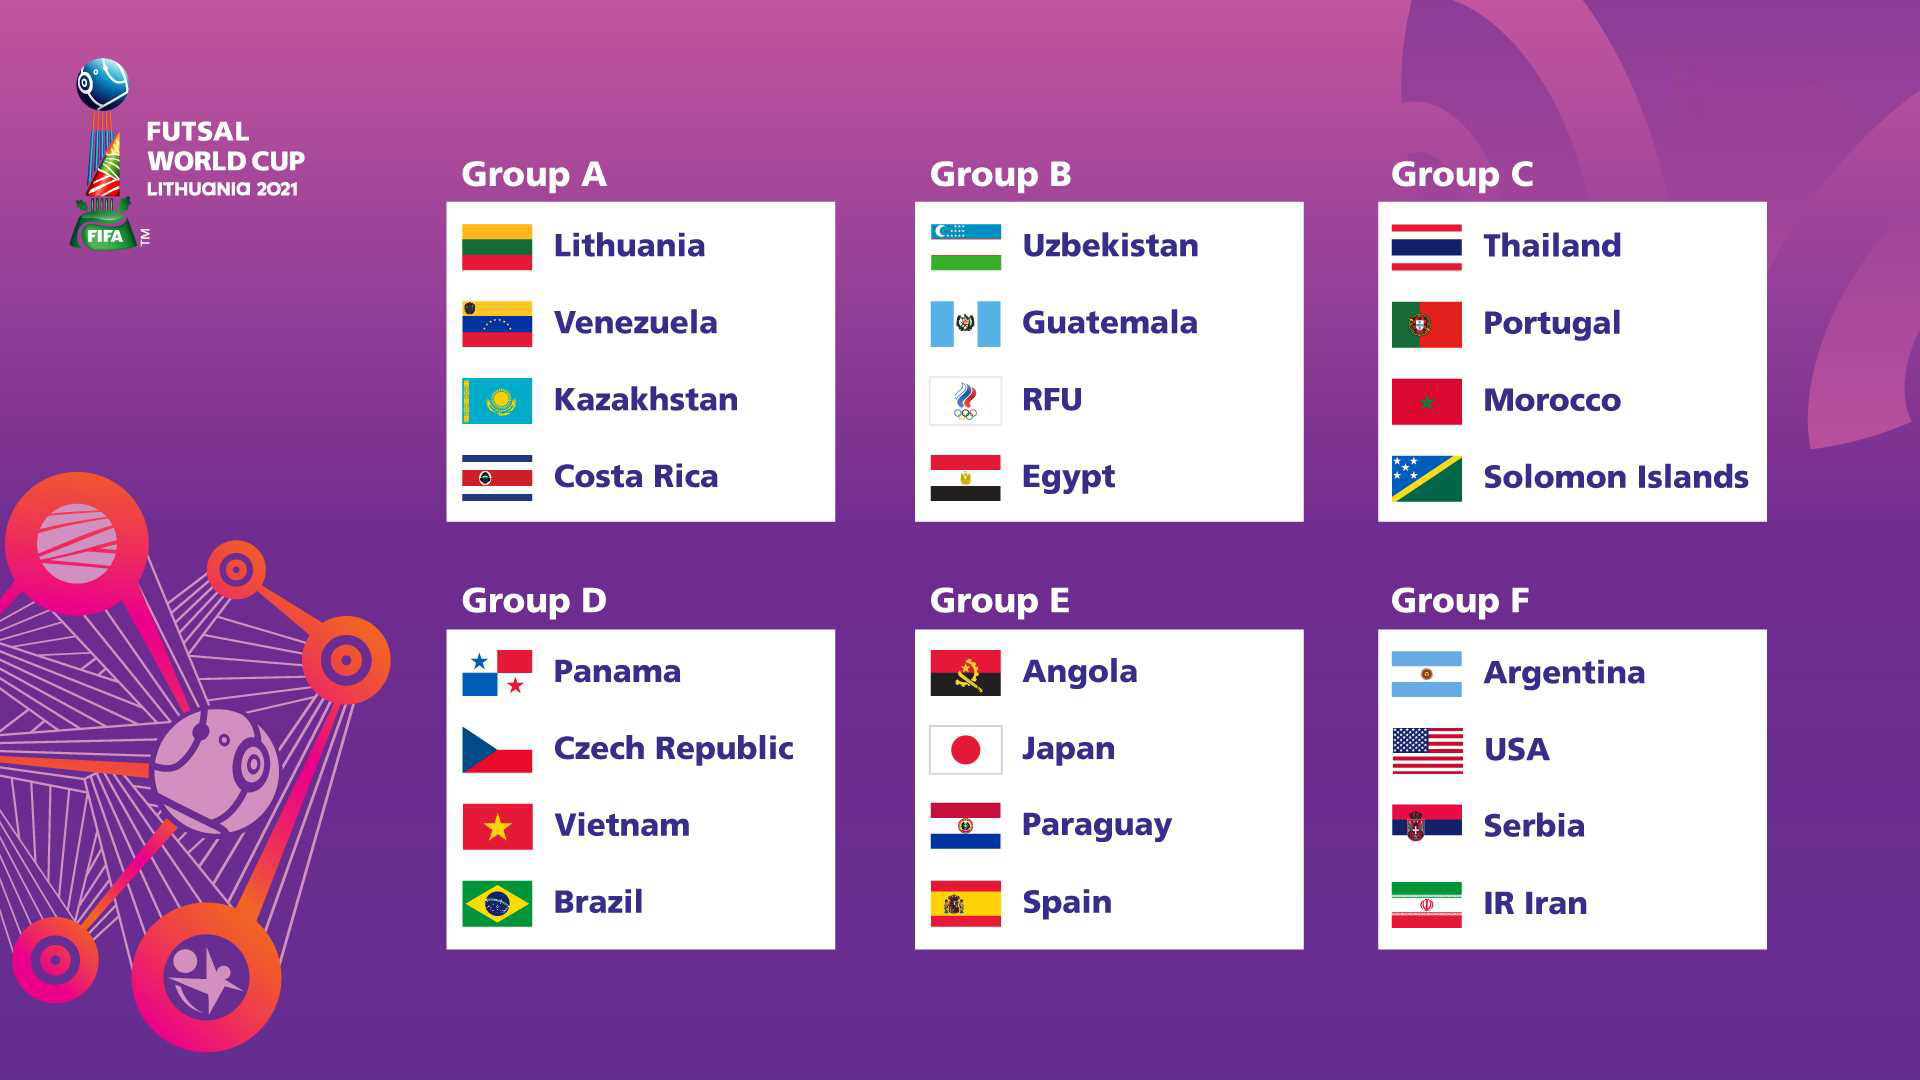 FIFA Futsal World Cup 2021 mở màn với các trận đấu giữa các đội tuyển futsal thuộc bảng A và bảng B